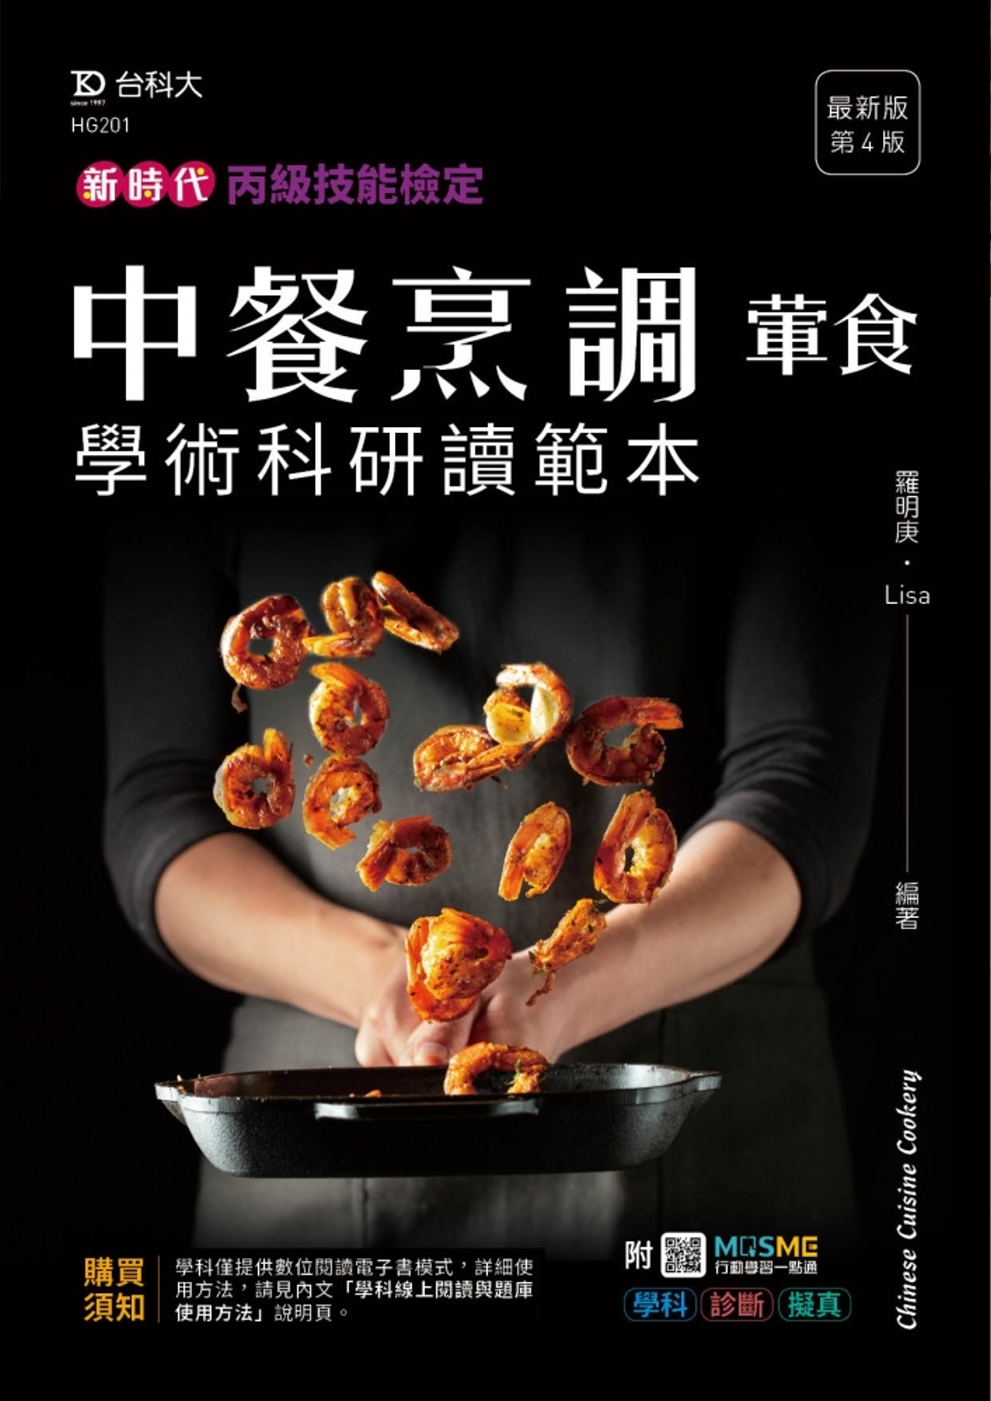 新時代 丙級中餐烹調(葷食)學術科研讀範本 - 最新版(第四...